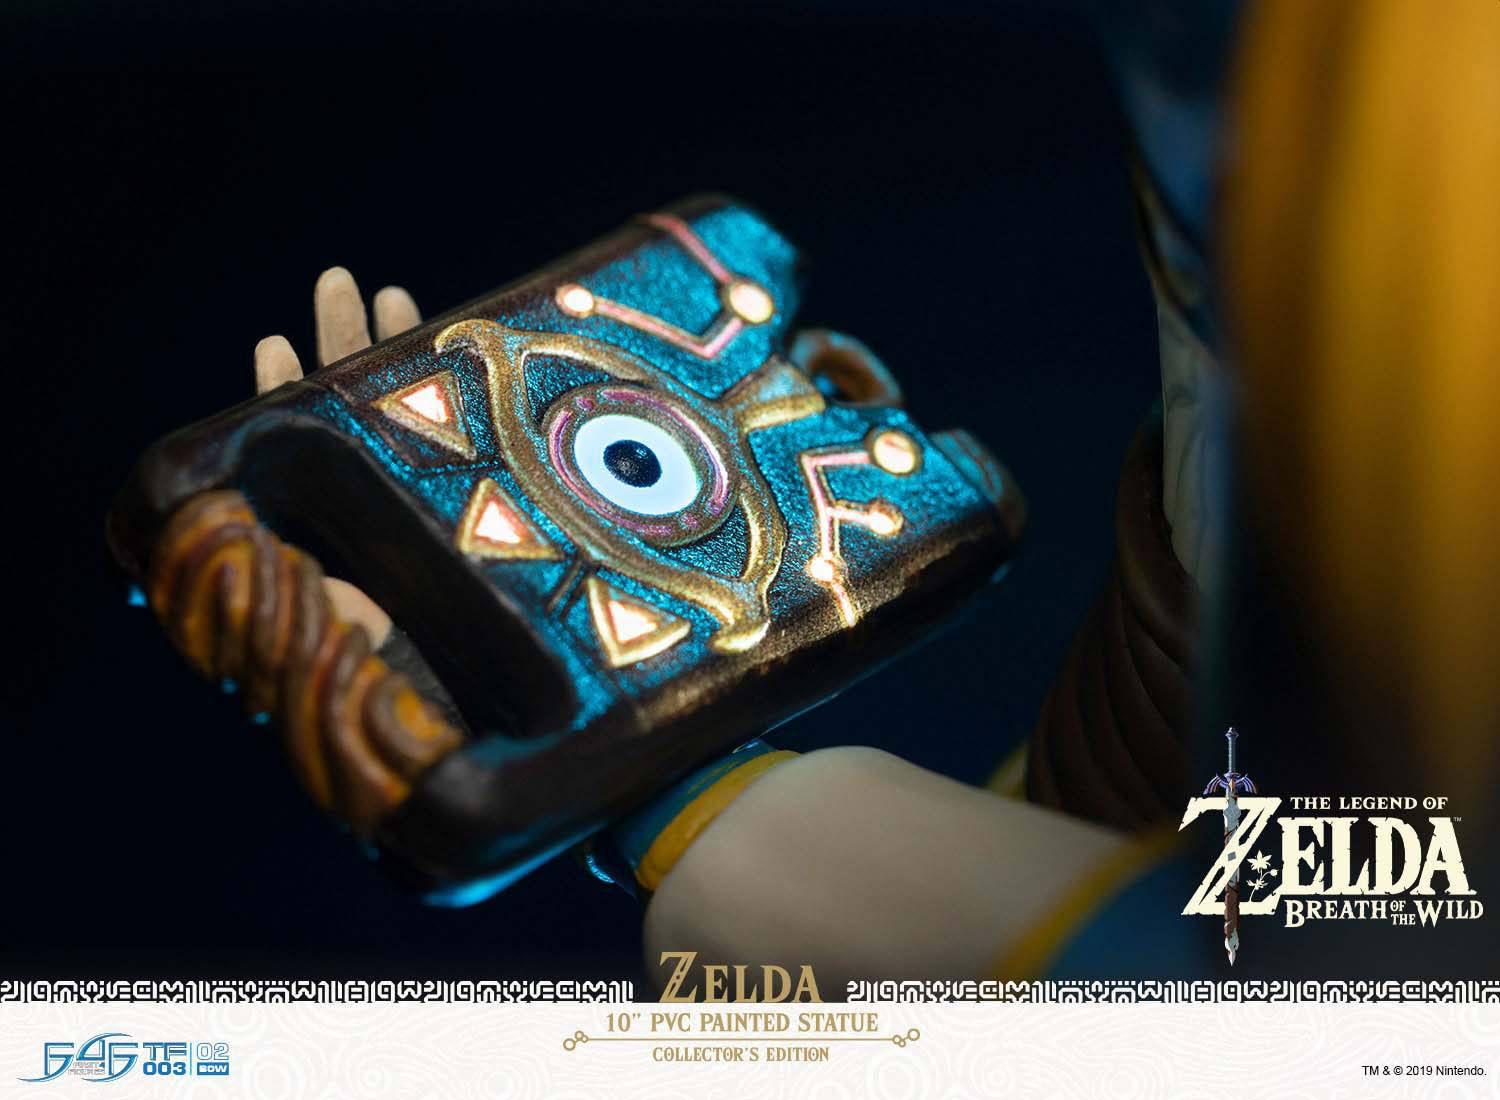 F4FBOTWZC The Legend of Zelda - Zelda Breath of the Wild Vinyl Statue Collector's Edition - First 4 Figures - Titan Pop Culture